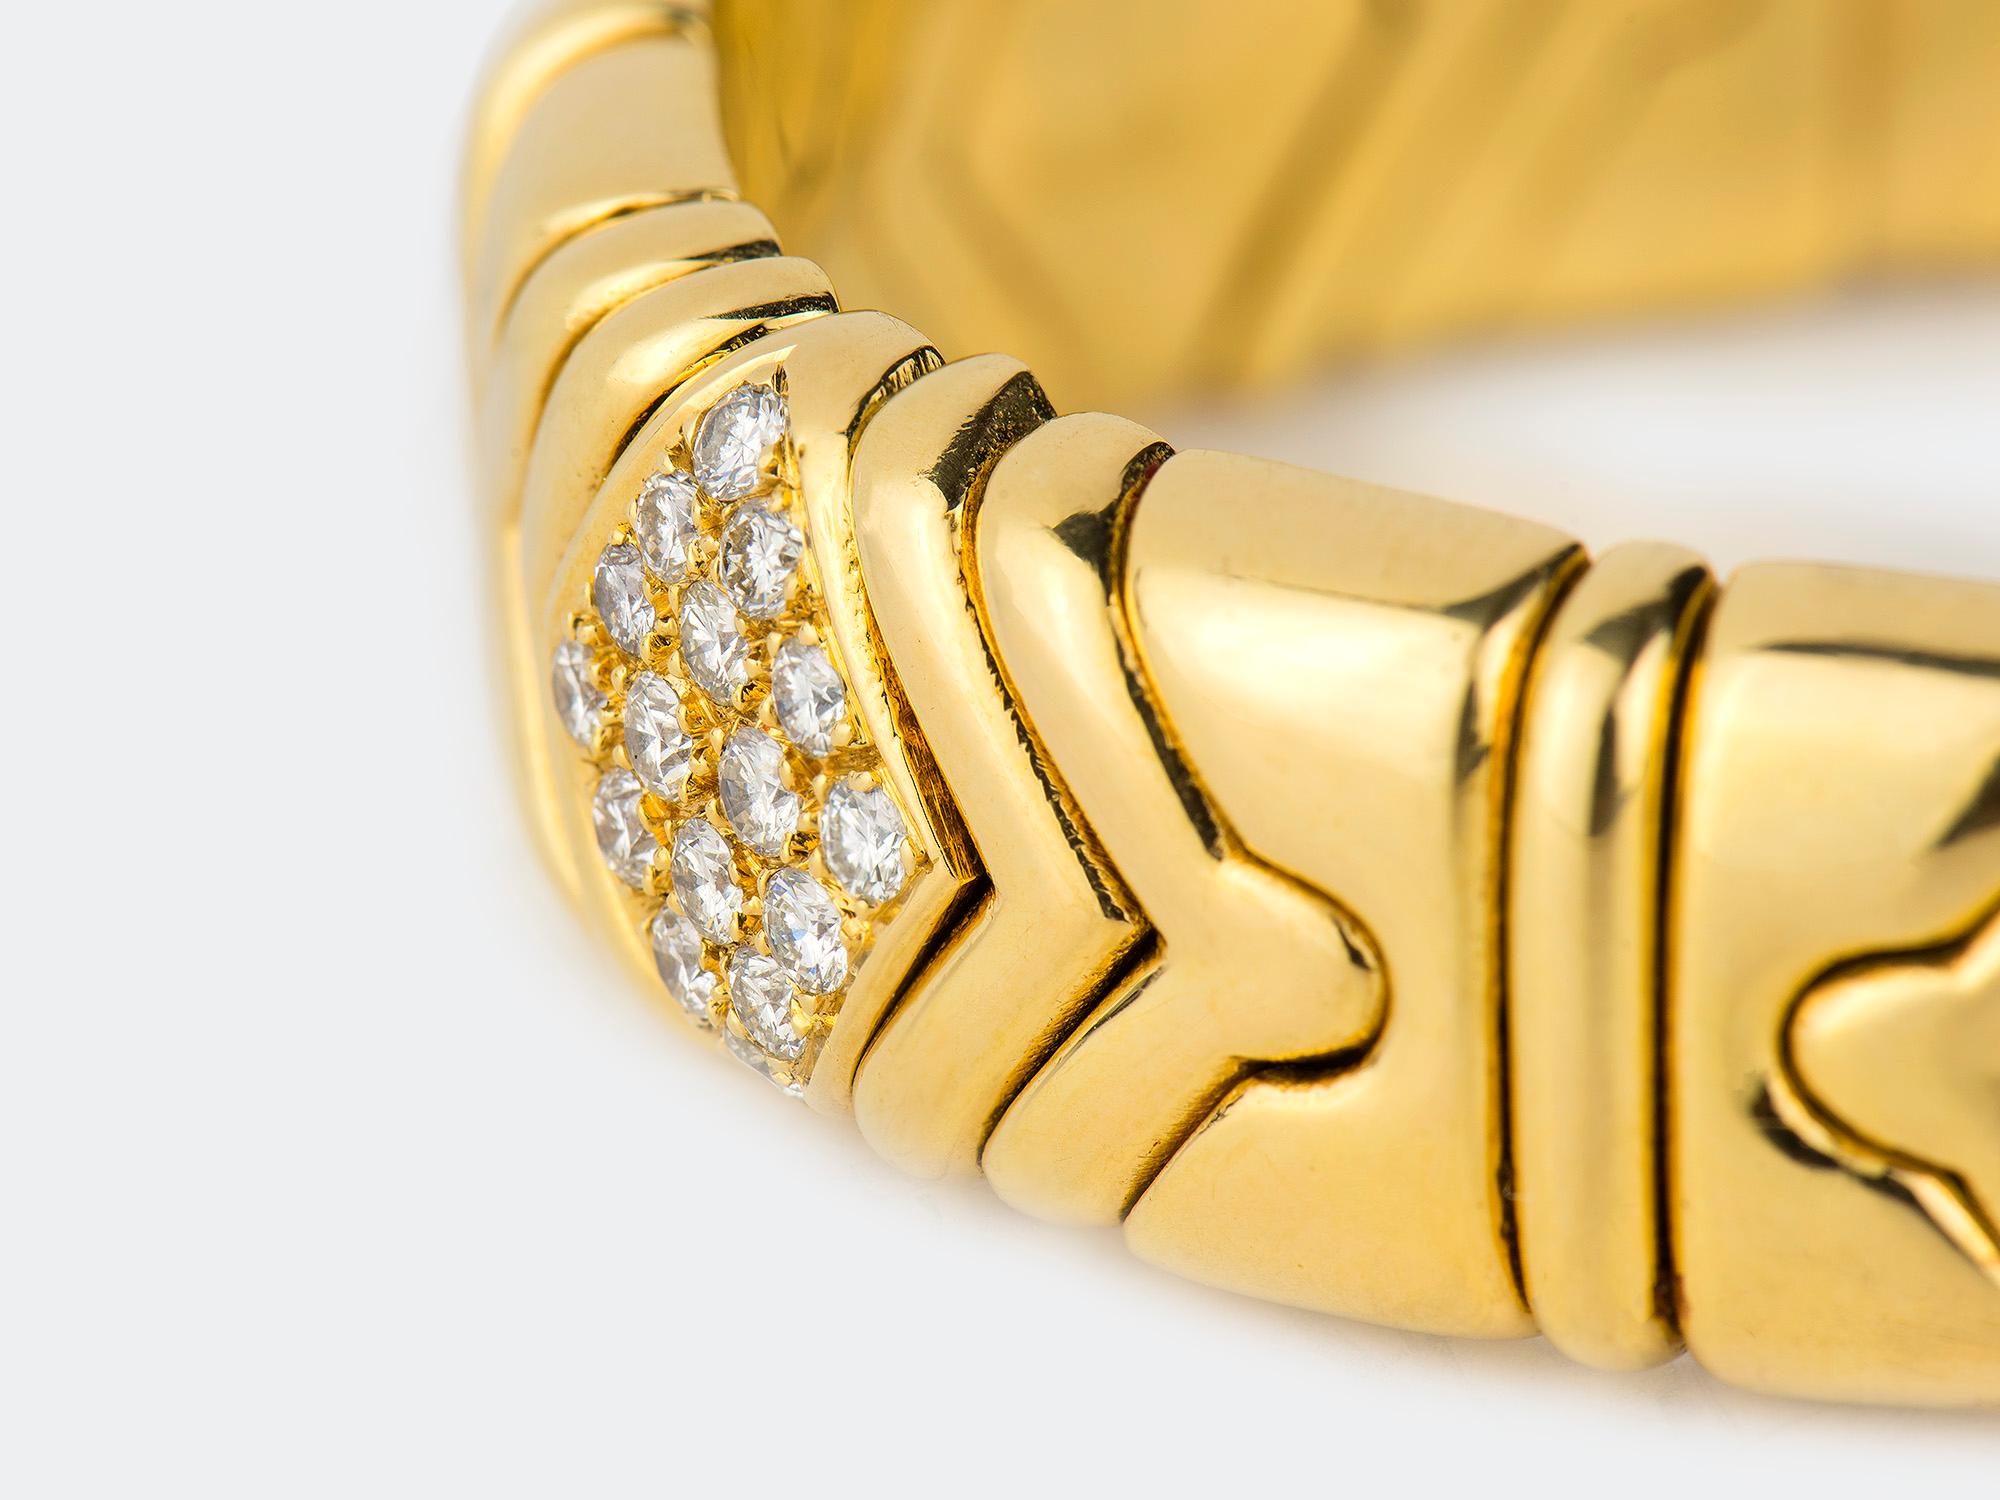 18K gold and diamond bangle bracelet. Diamond weight is approximately 3.50 carats. Signed BULGARI 750.